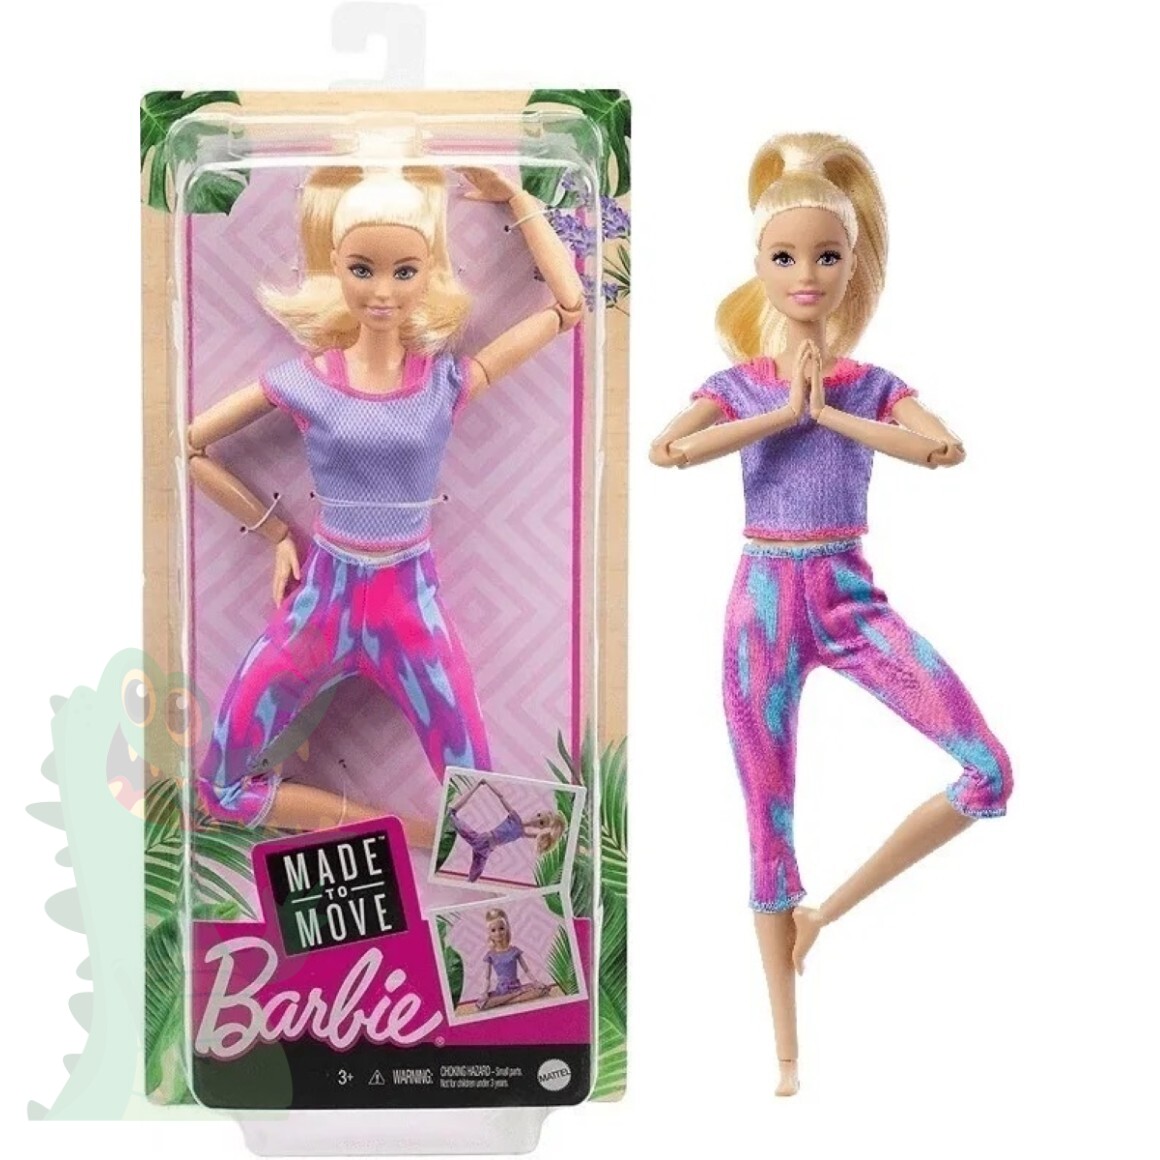 Molde Eu Estilista - Roupa De Boneca Pra Barbie - Faça Você